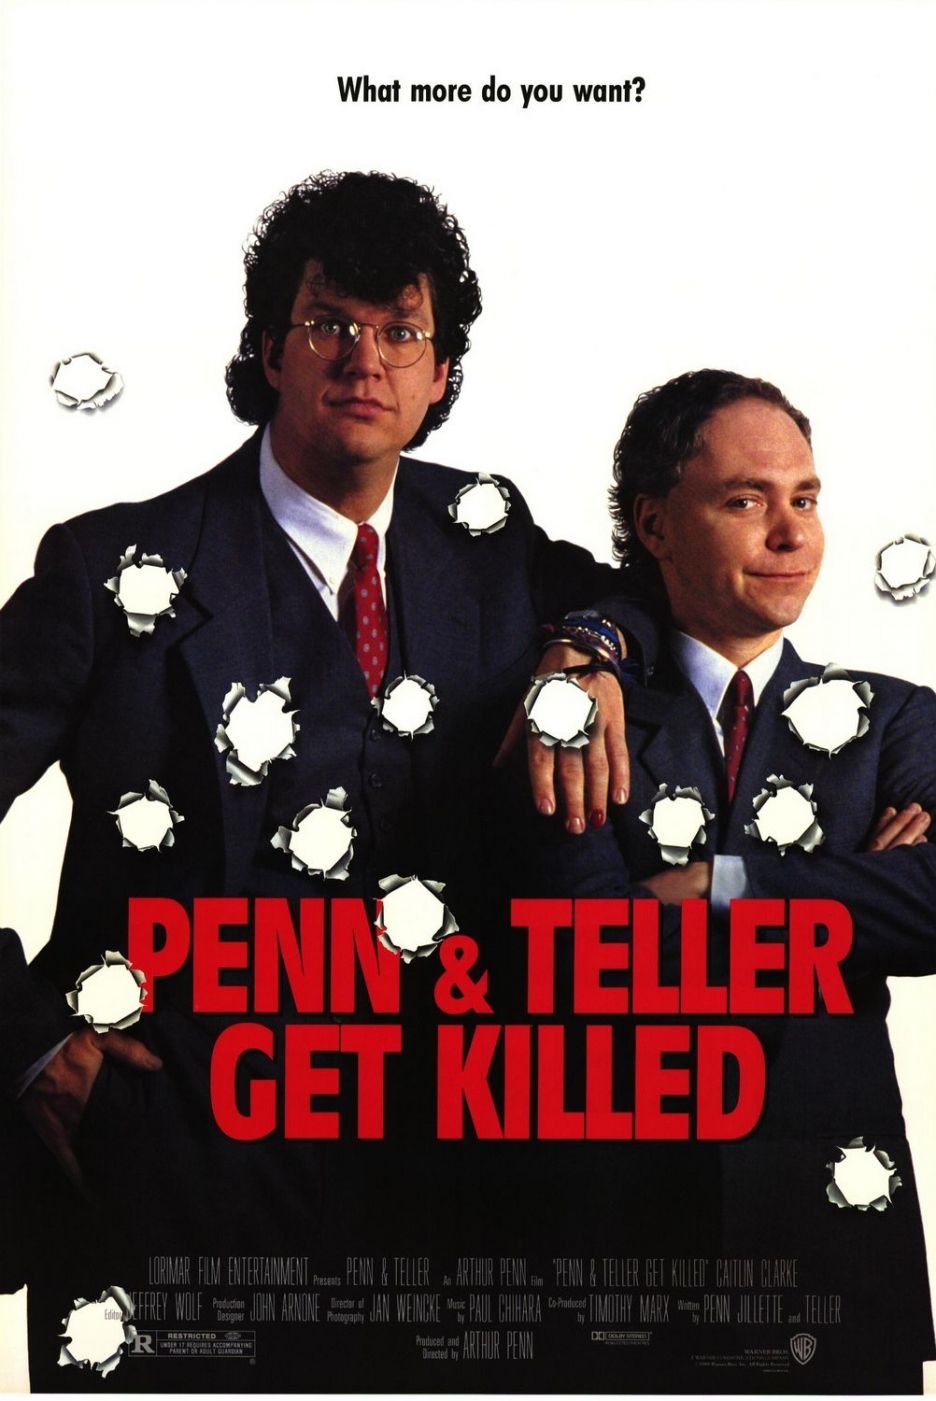 Penn & Teller Get Killed (1989) Screenshot 5